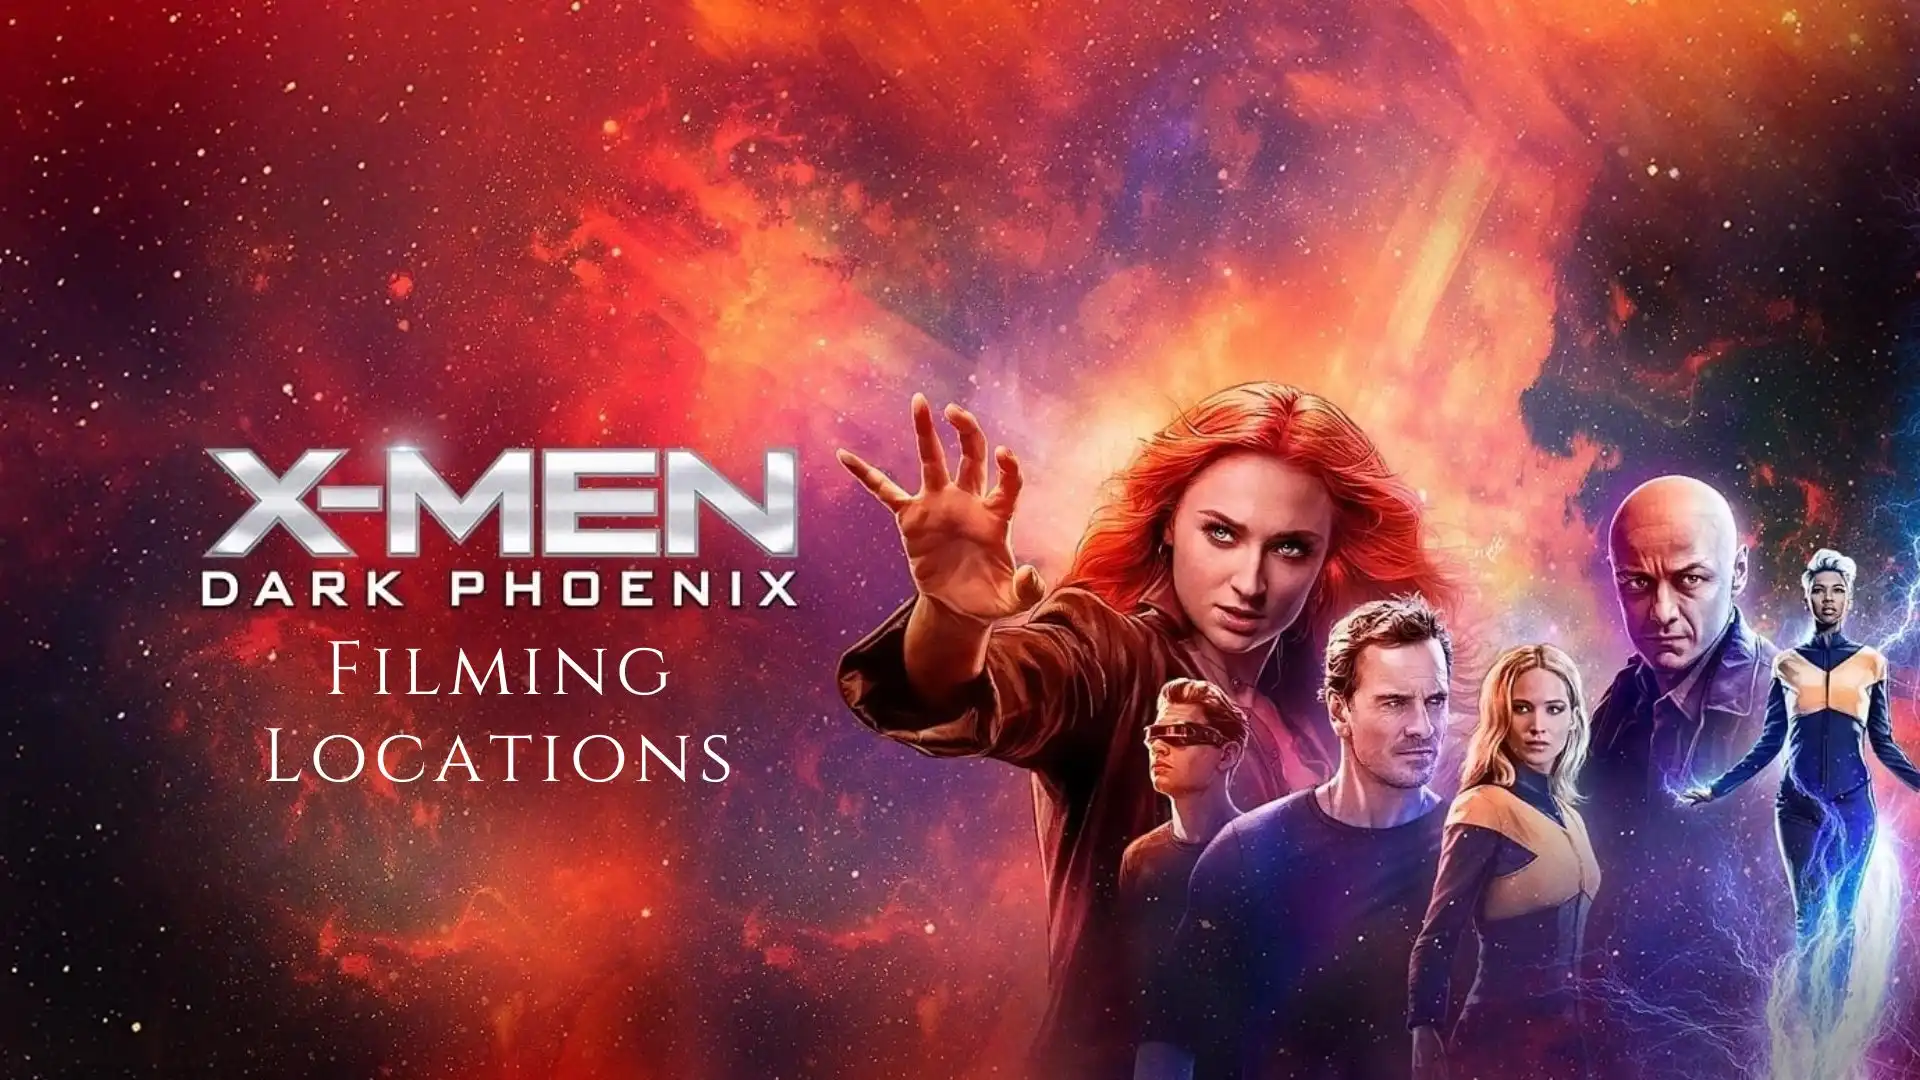 X-Men: Dark Phoenix Filming Locations (Image credit: 20thcenturystudios)